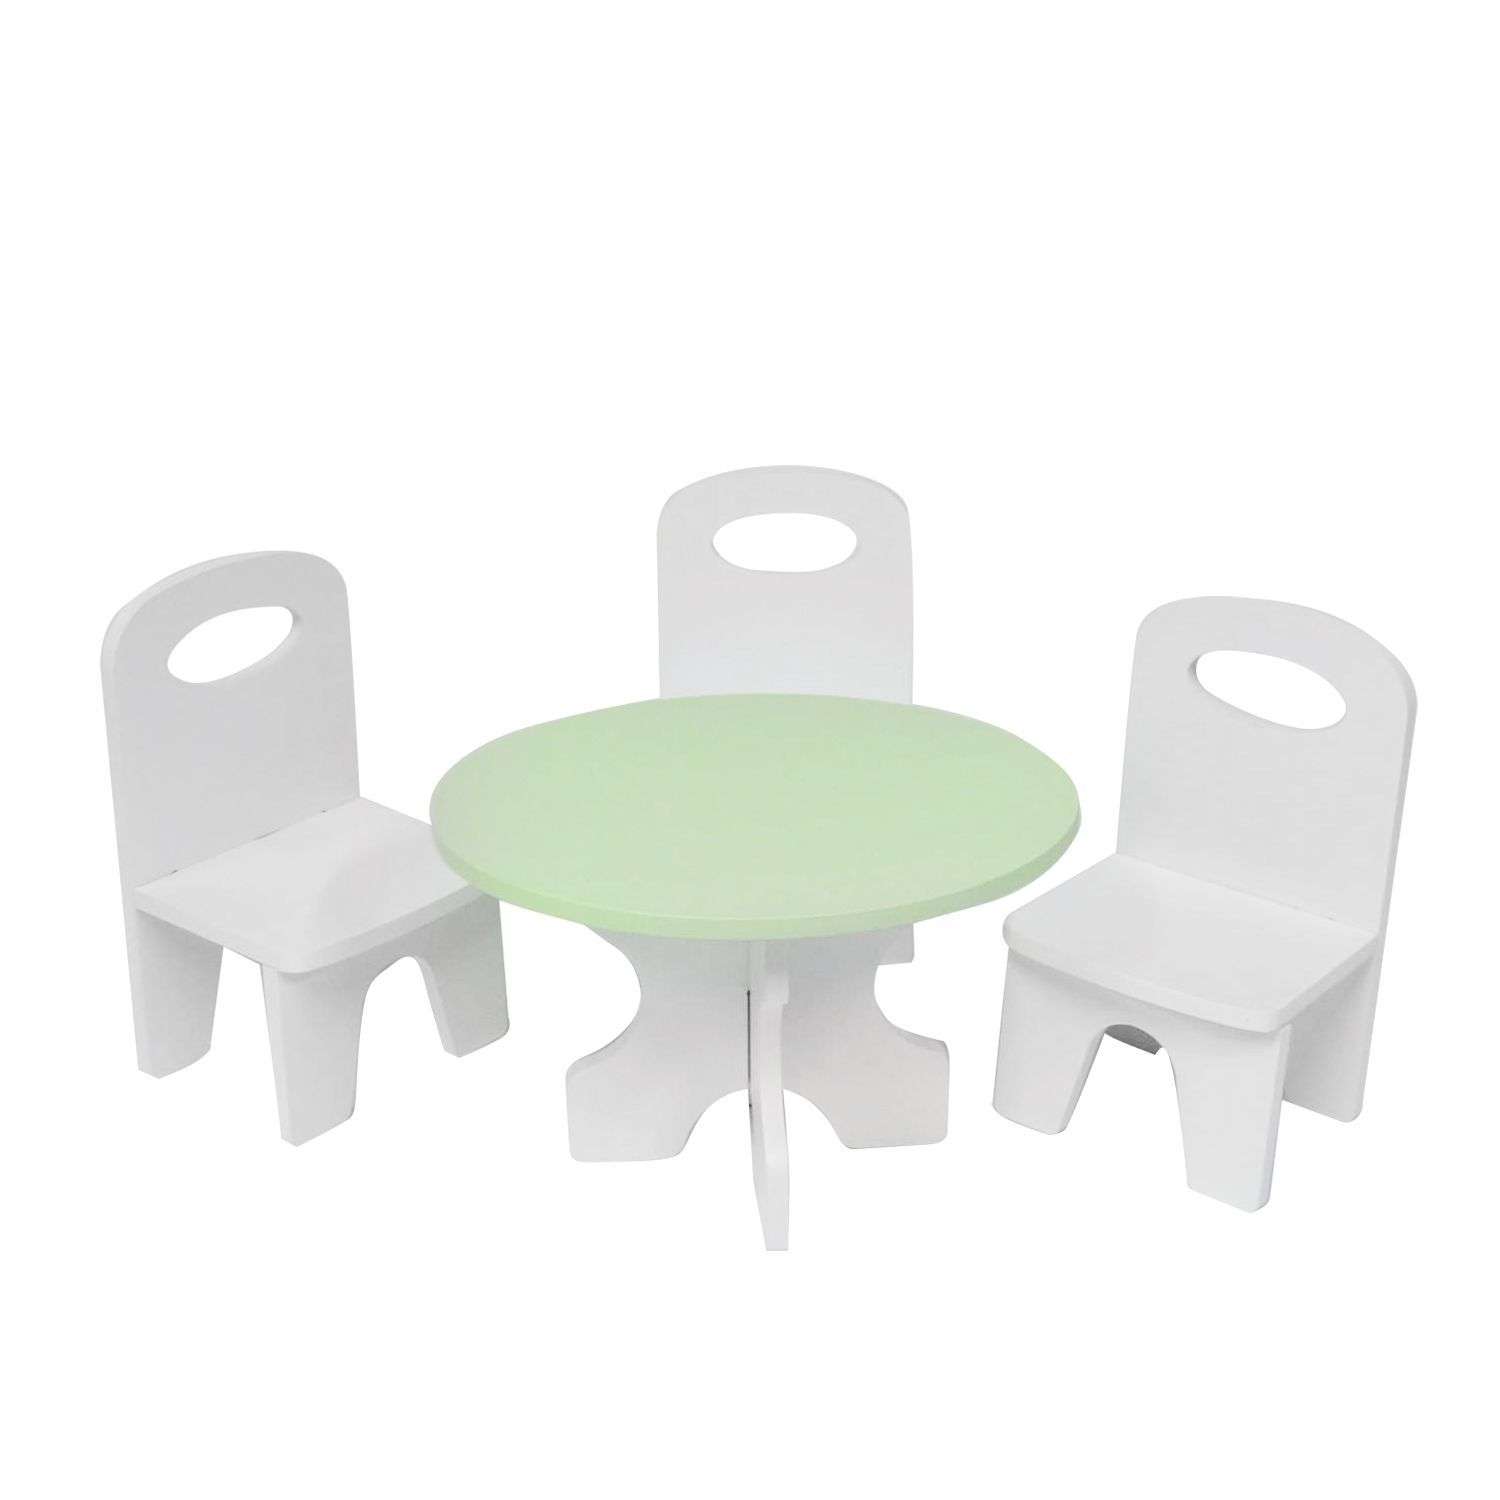 Мебель для кукол Paremo Классика набор 4предмета Белый-салатовый PFD120-41 PFD120-41 - фото 1